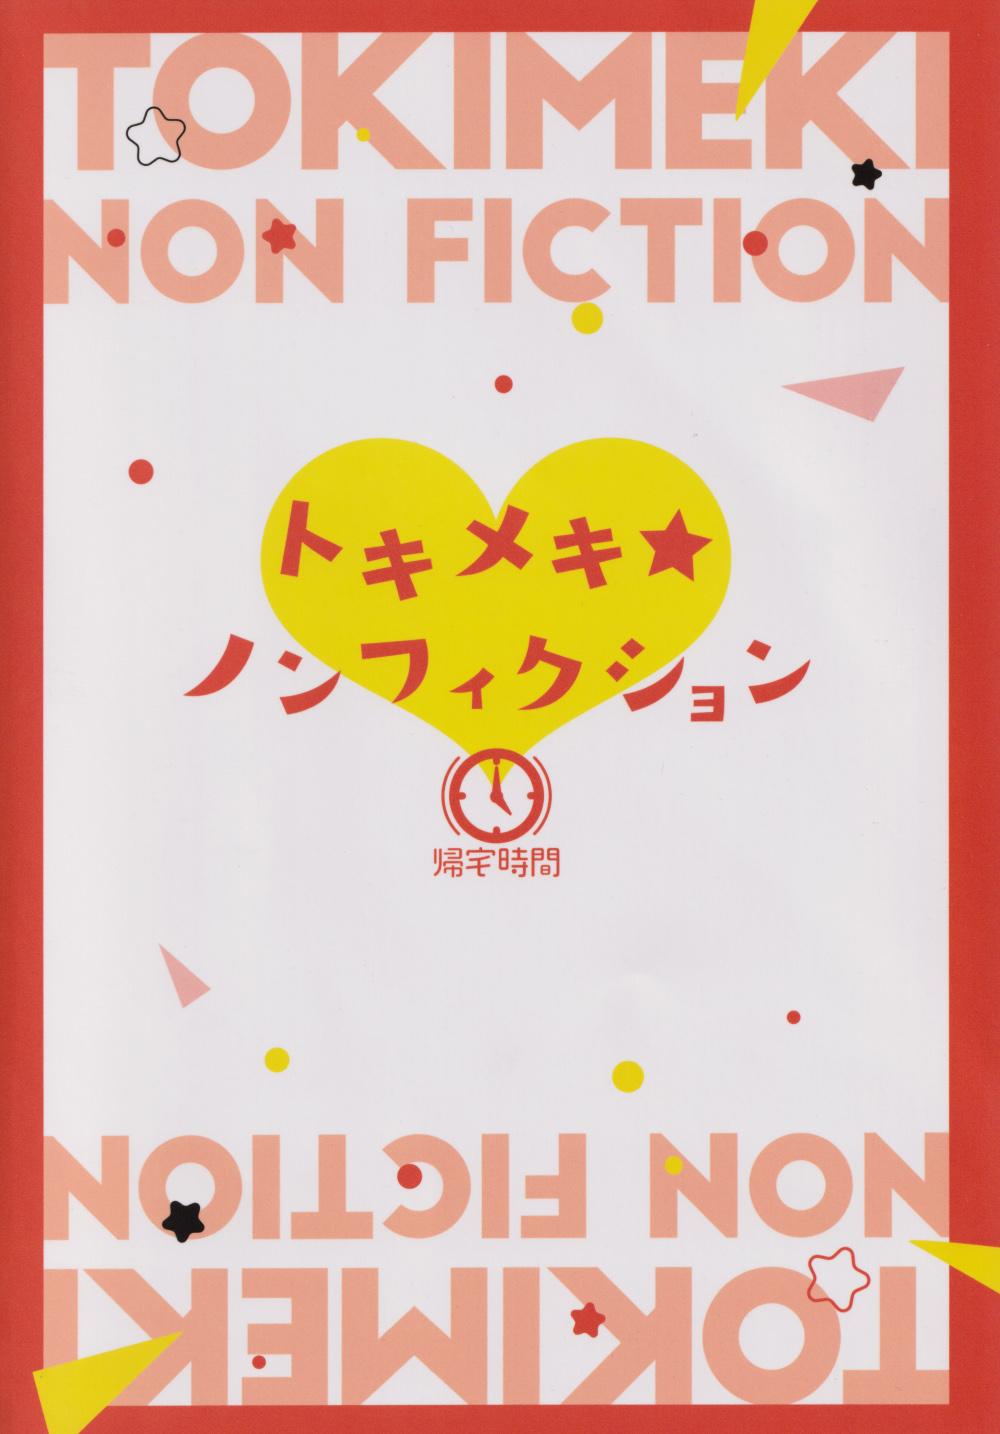 Tokimeki Nonfiction 28